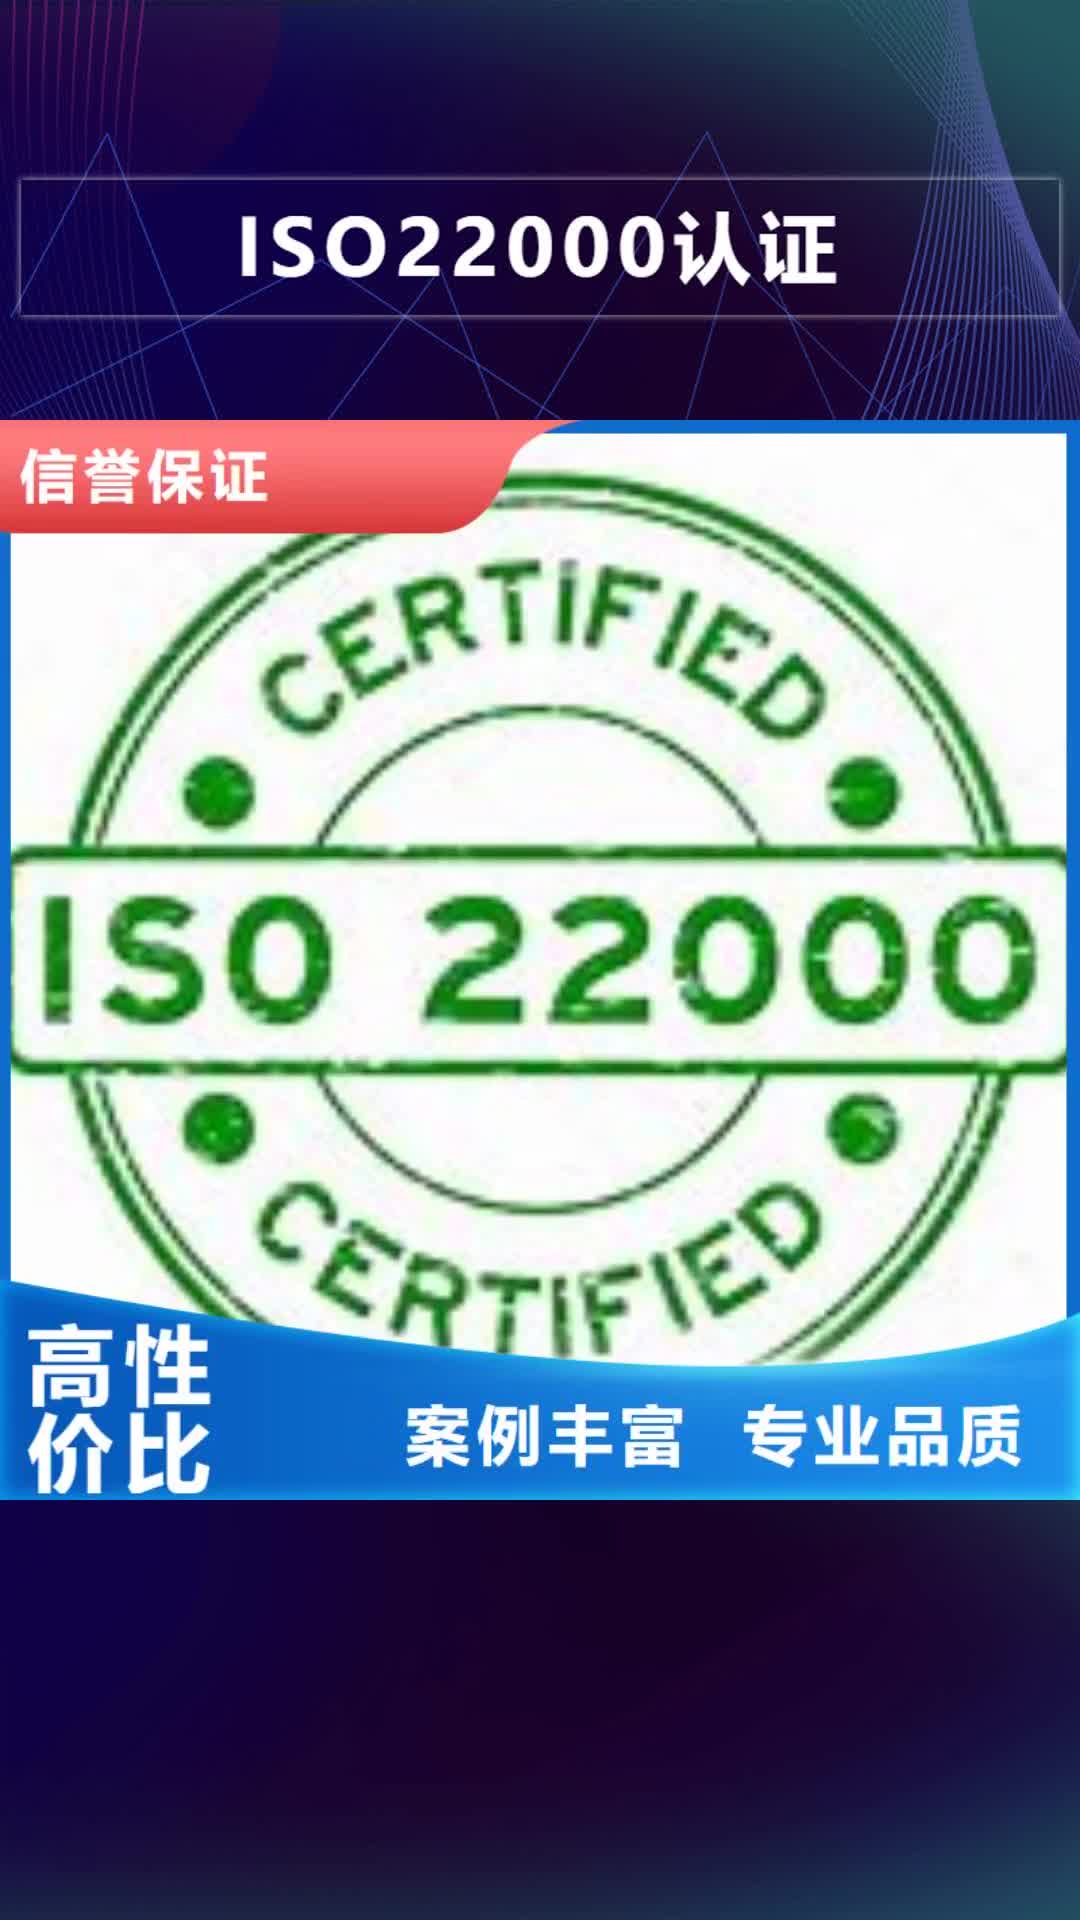 【合肥 ISO22000认证-HACCP认证多家服务案例】